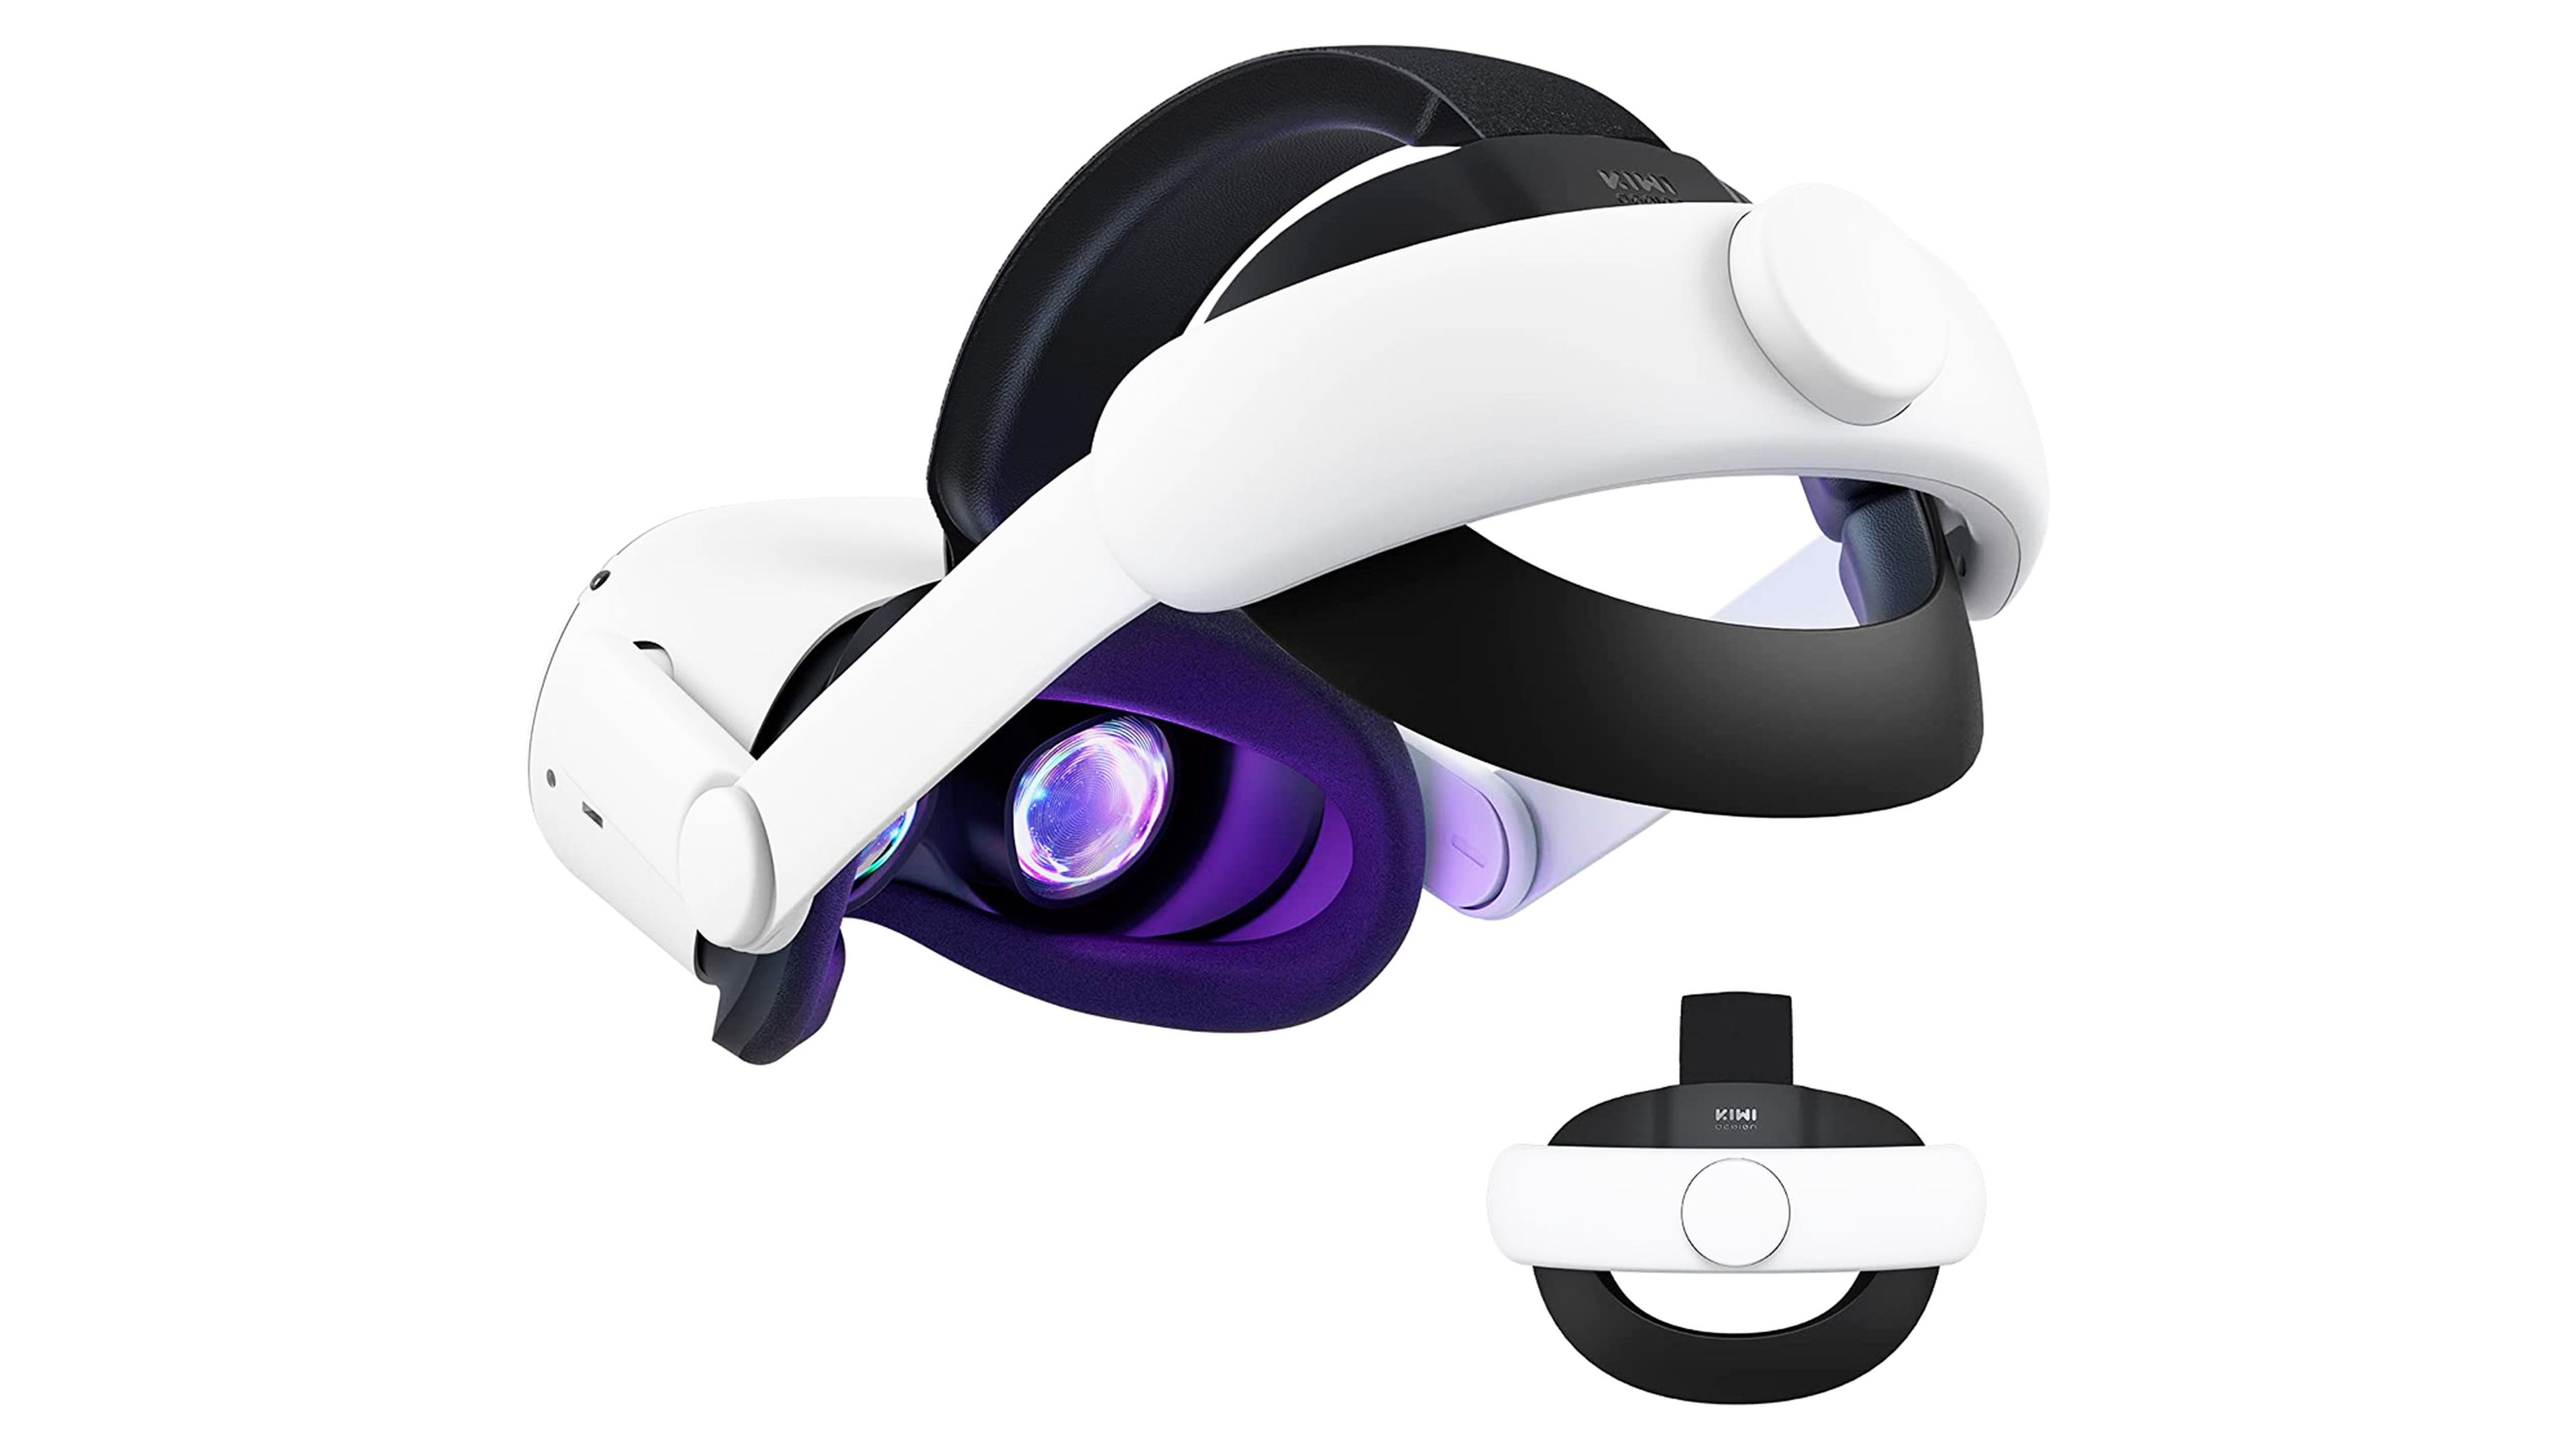 Accesorios para quest 3, mejora tus sesiones de accesorios VR con